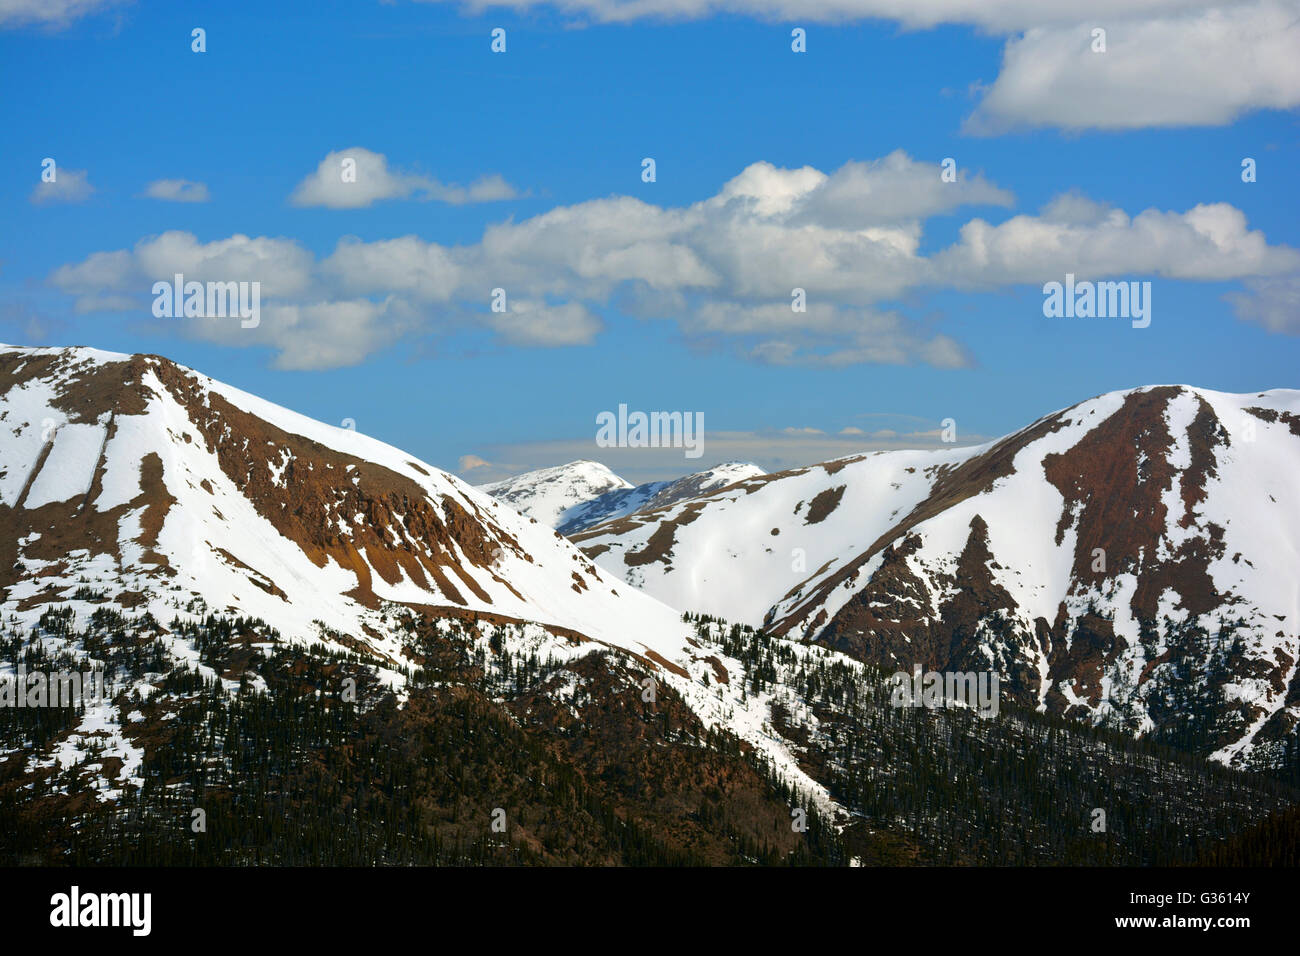 Coperte di neve montagne di pietra con alberi di pino ad altitudini più basse Foto Stock